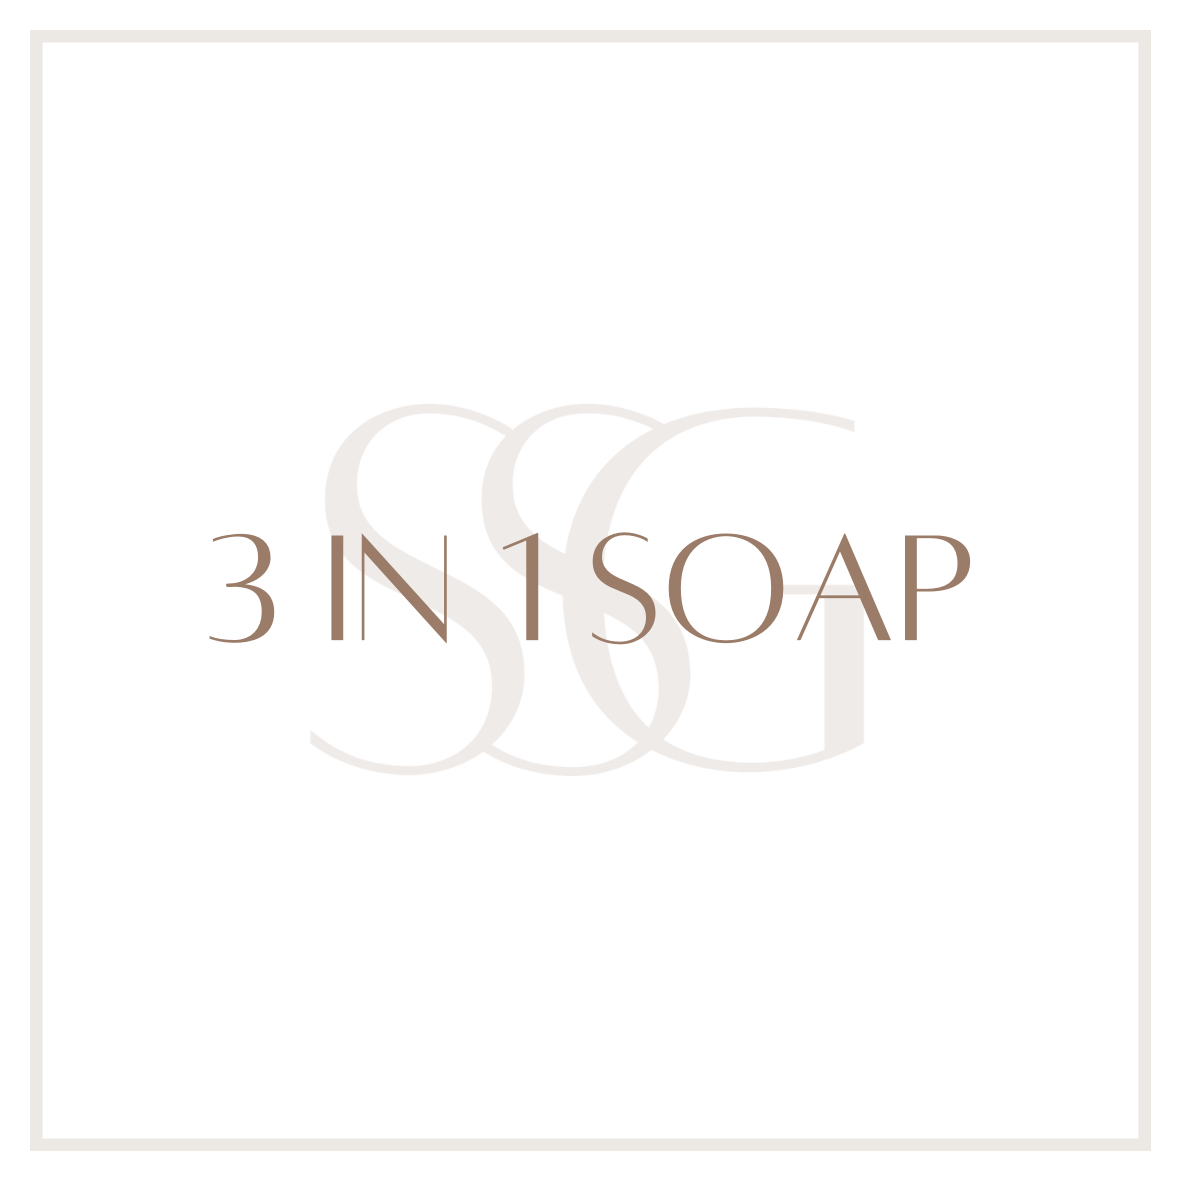 3-IN-1 SOAP